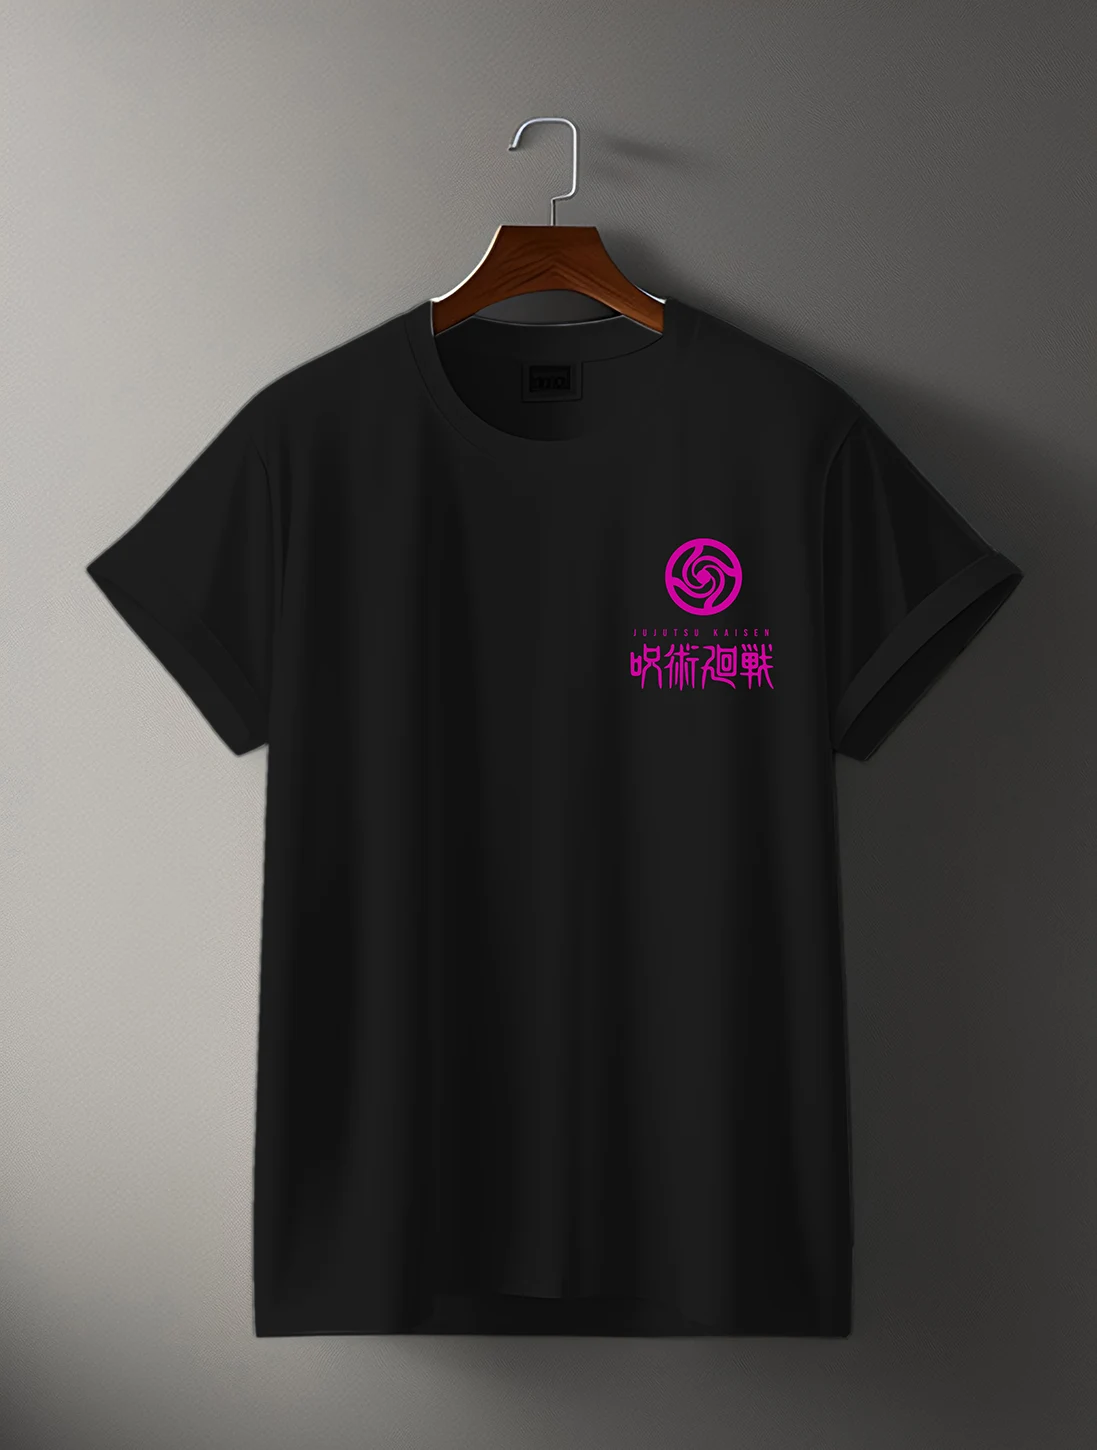 Suguru geto anime t-shirt by bonganze